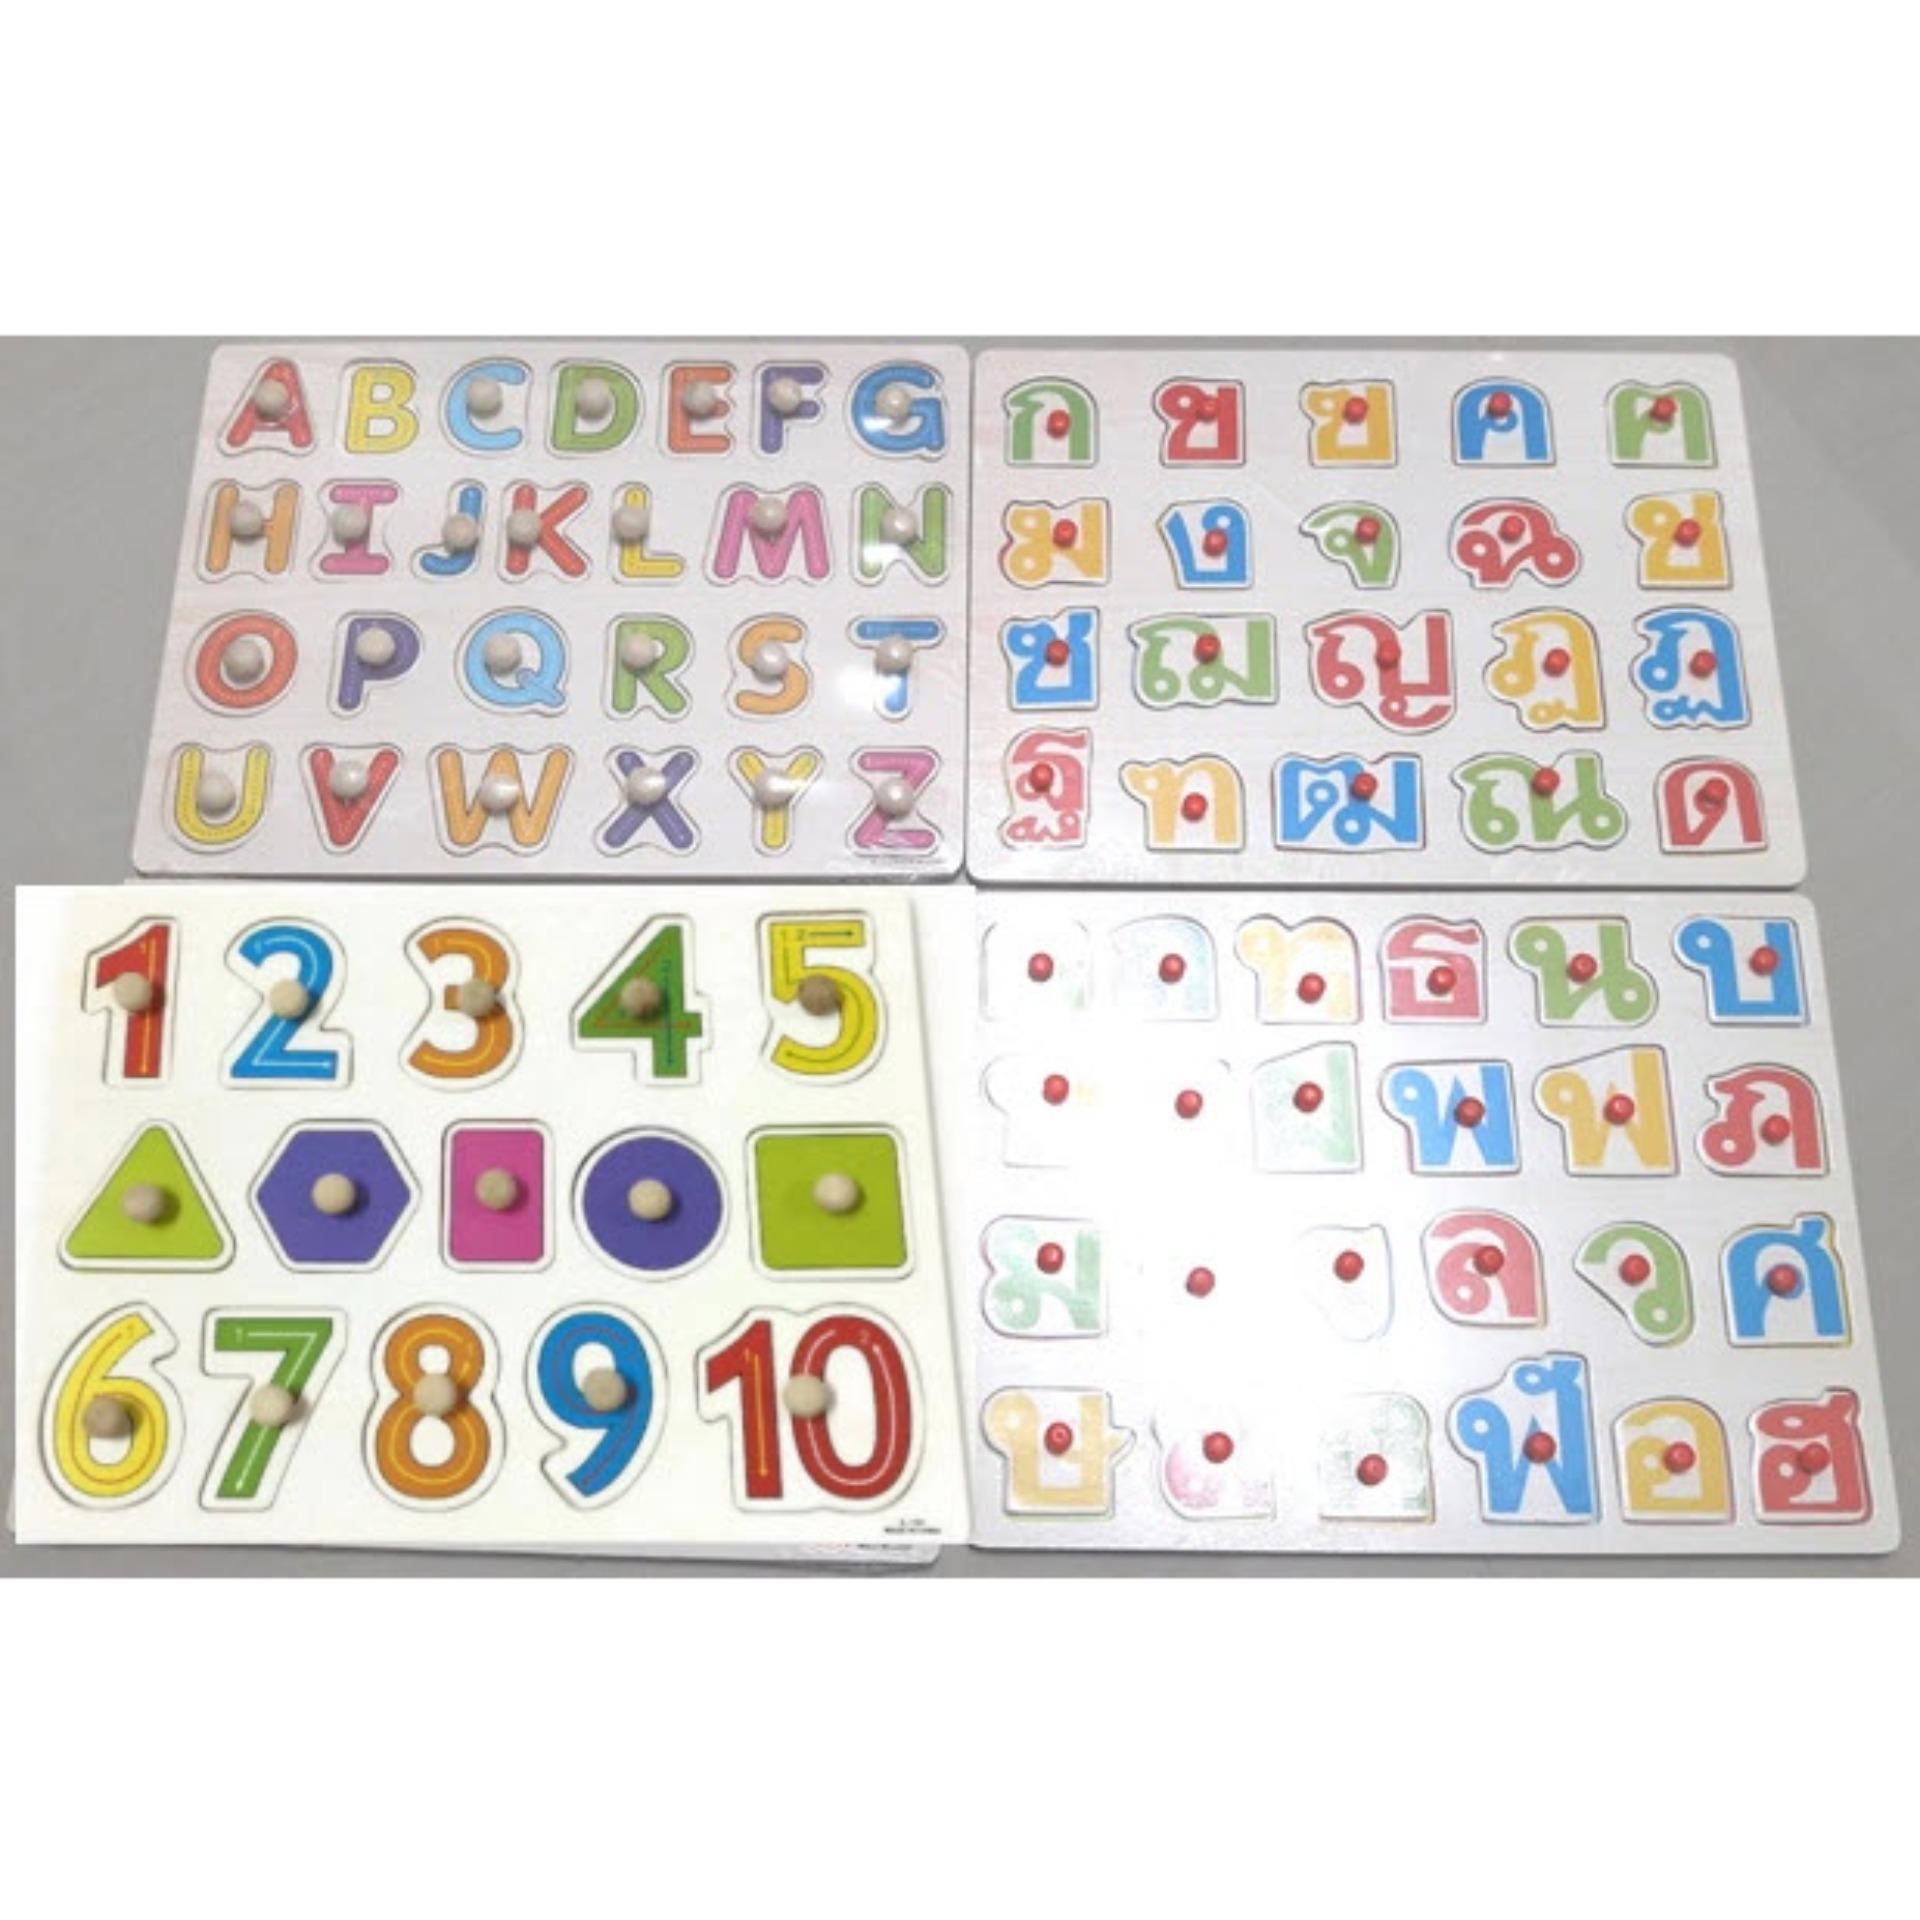 จิ๊กซอว์ไม้ กระดานหมุด ชุด 3 แบบ กระดานจับคู่ ของเล่นไม้ กระดาษสอนภาษา ABC/ 123/ กขค ได้ทั้งหมด 4 กระดาน